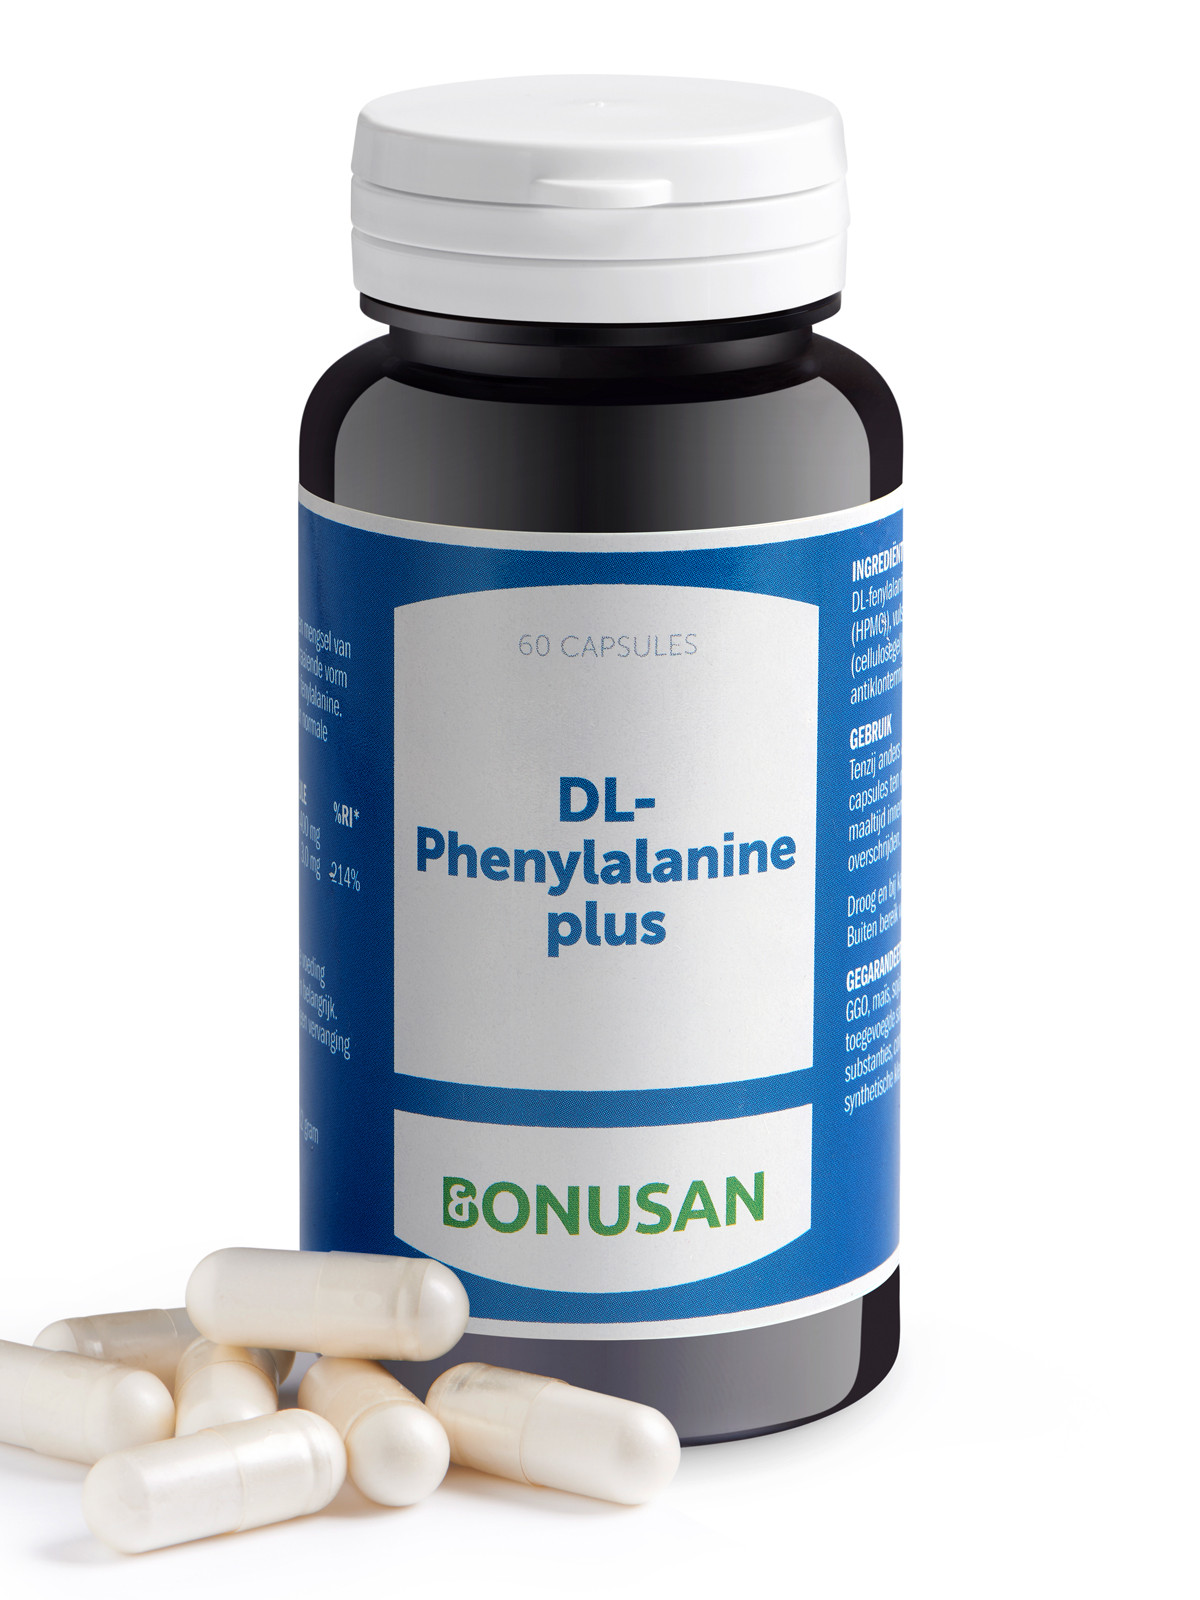 DL Phenylalanine plus